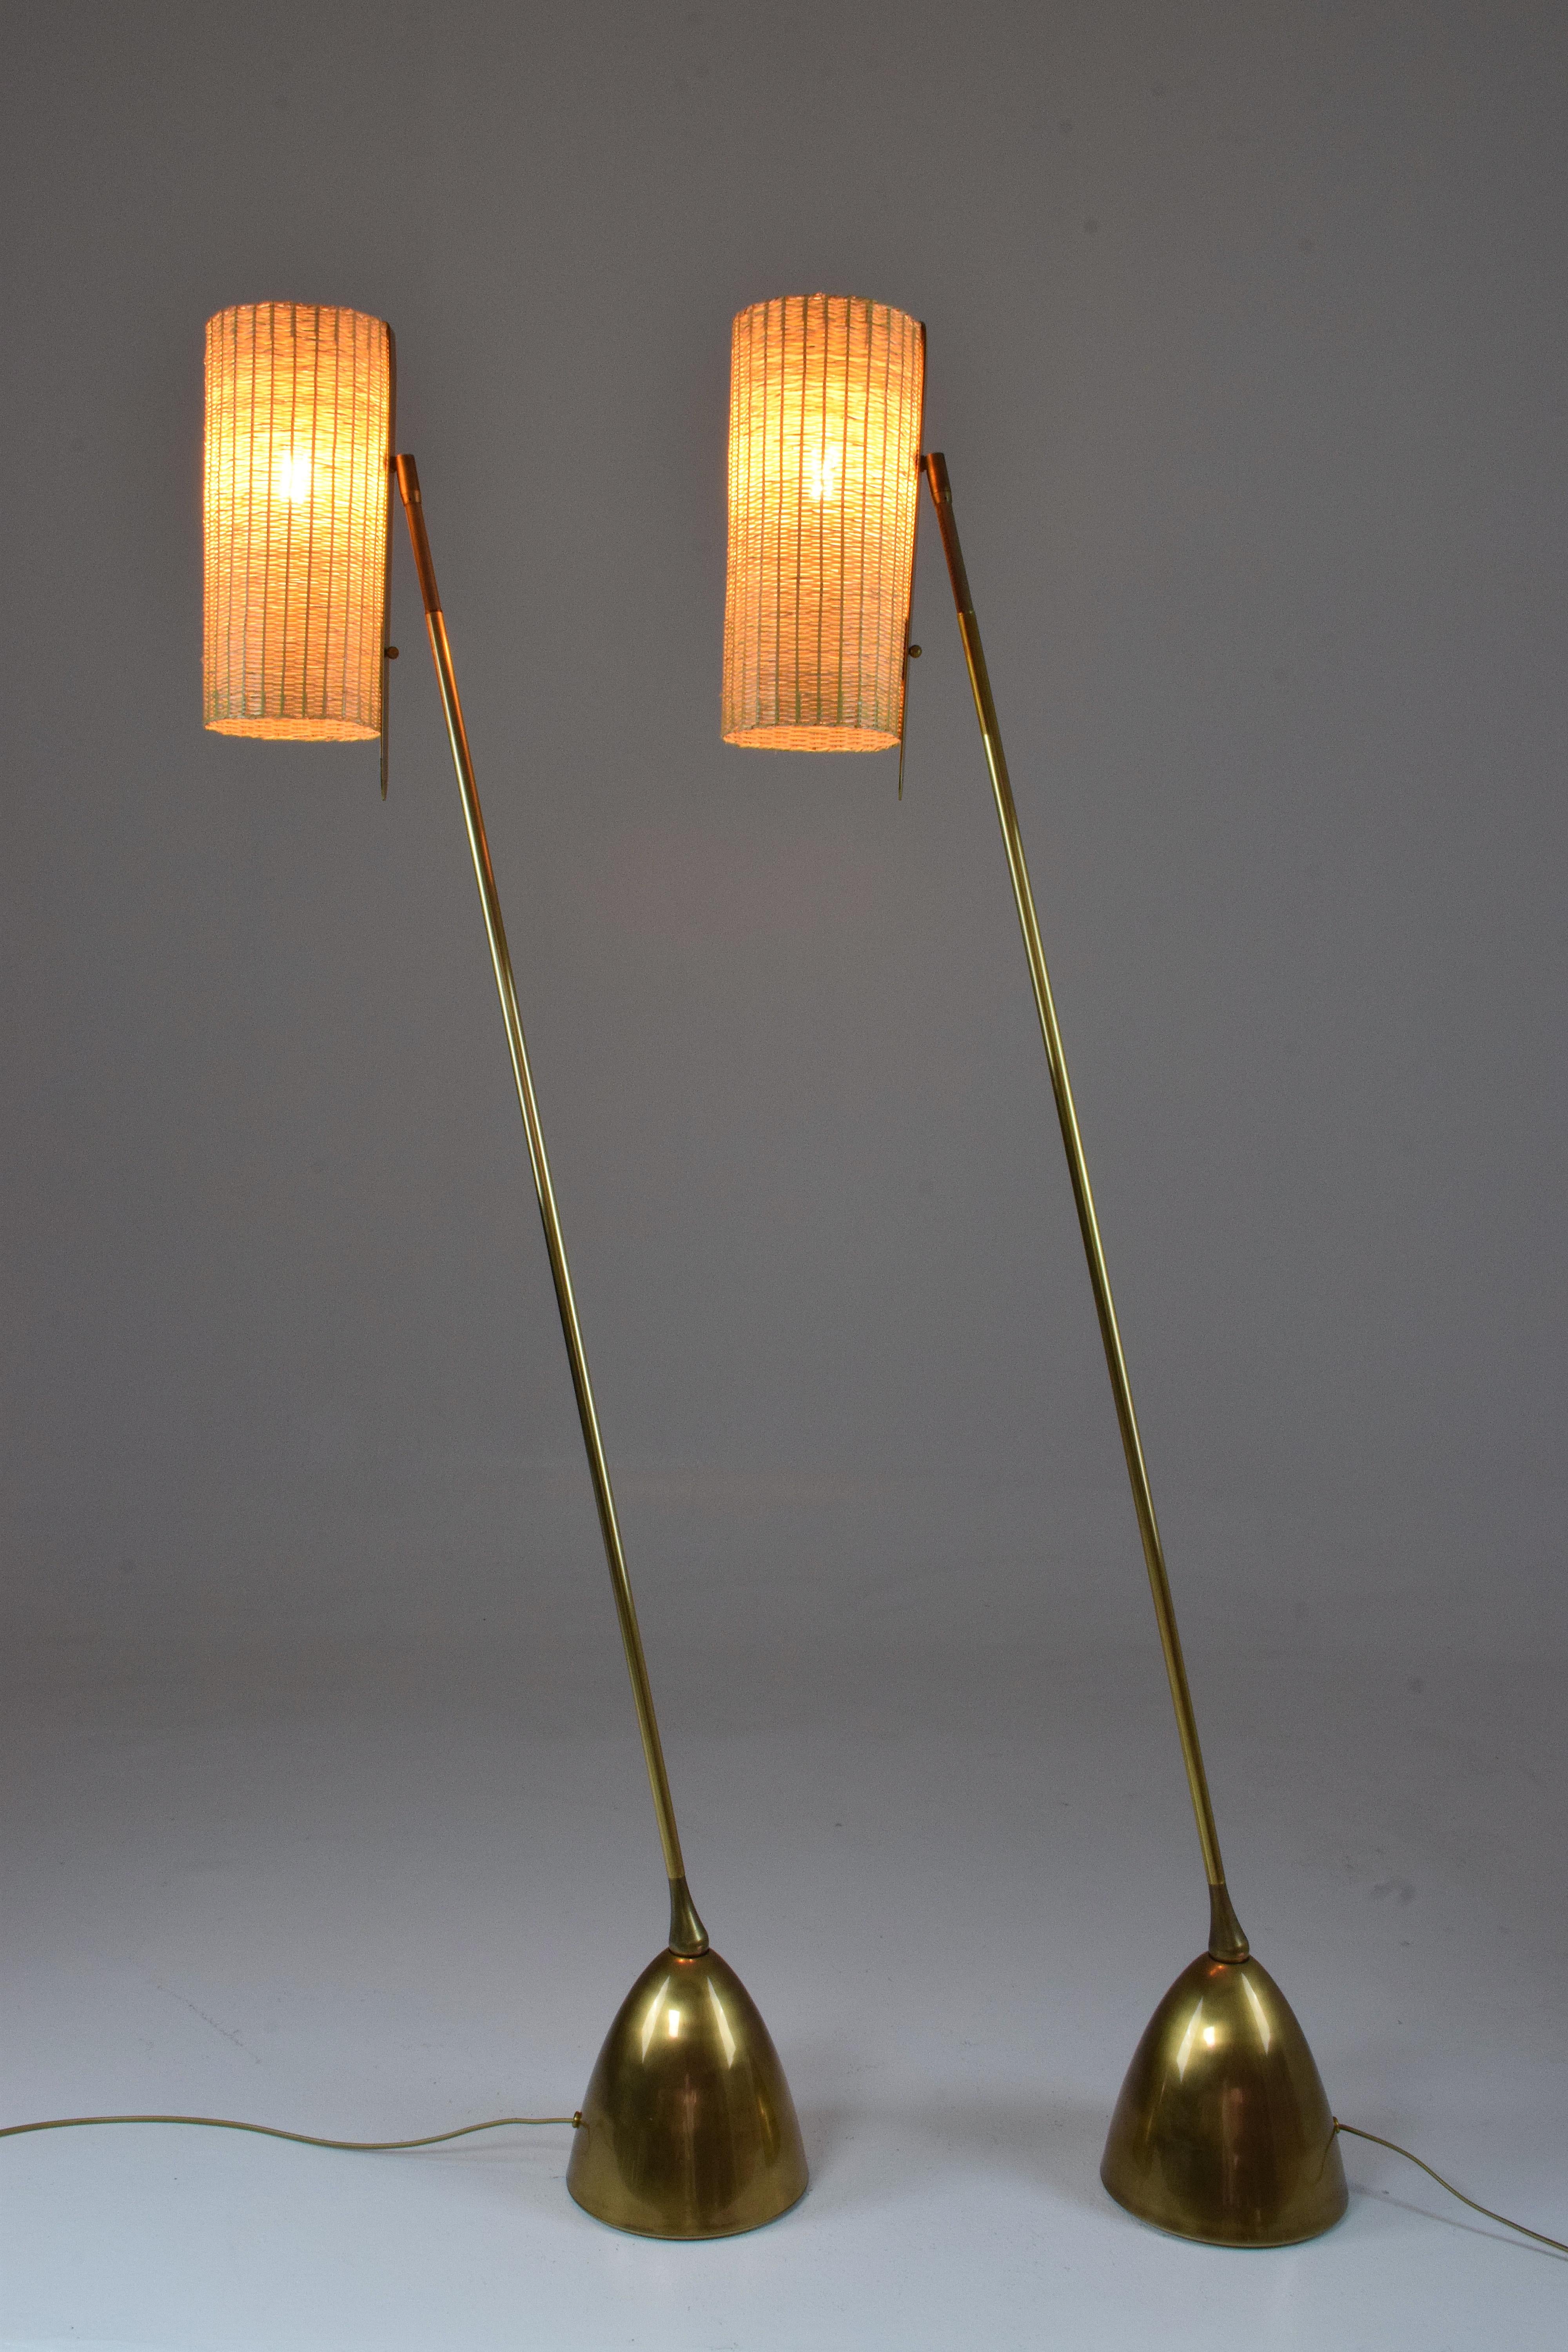 Le lampadaire De.Light F2 est doté d'une articulation en forme de poire qui permet un mouvement multidirectionnel. Le bras en laiton est orné d'un détail en cuir tressé à la main par des selliers qualifiés. L'abat-jour, disponible au choix en tissu